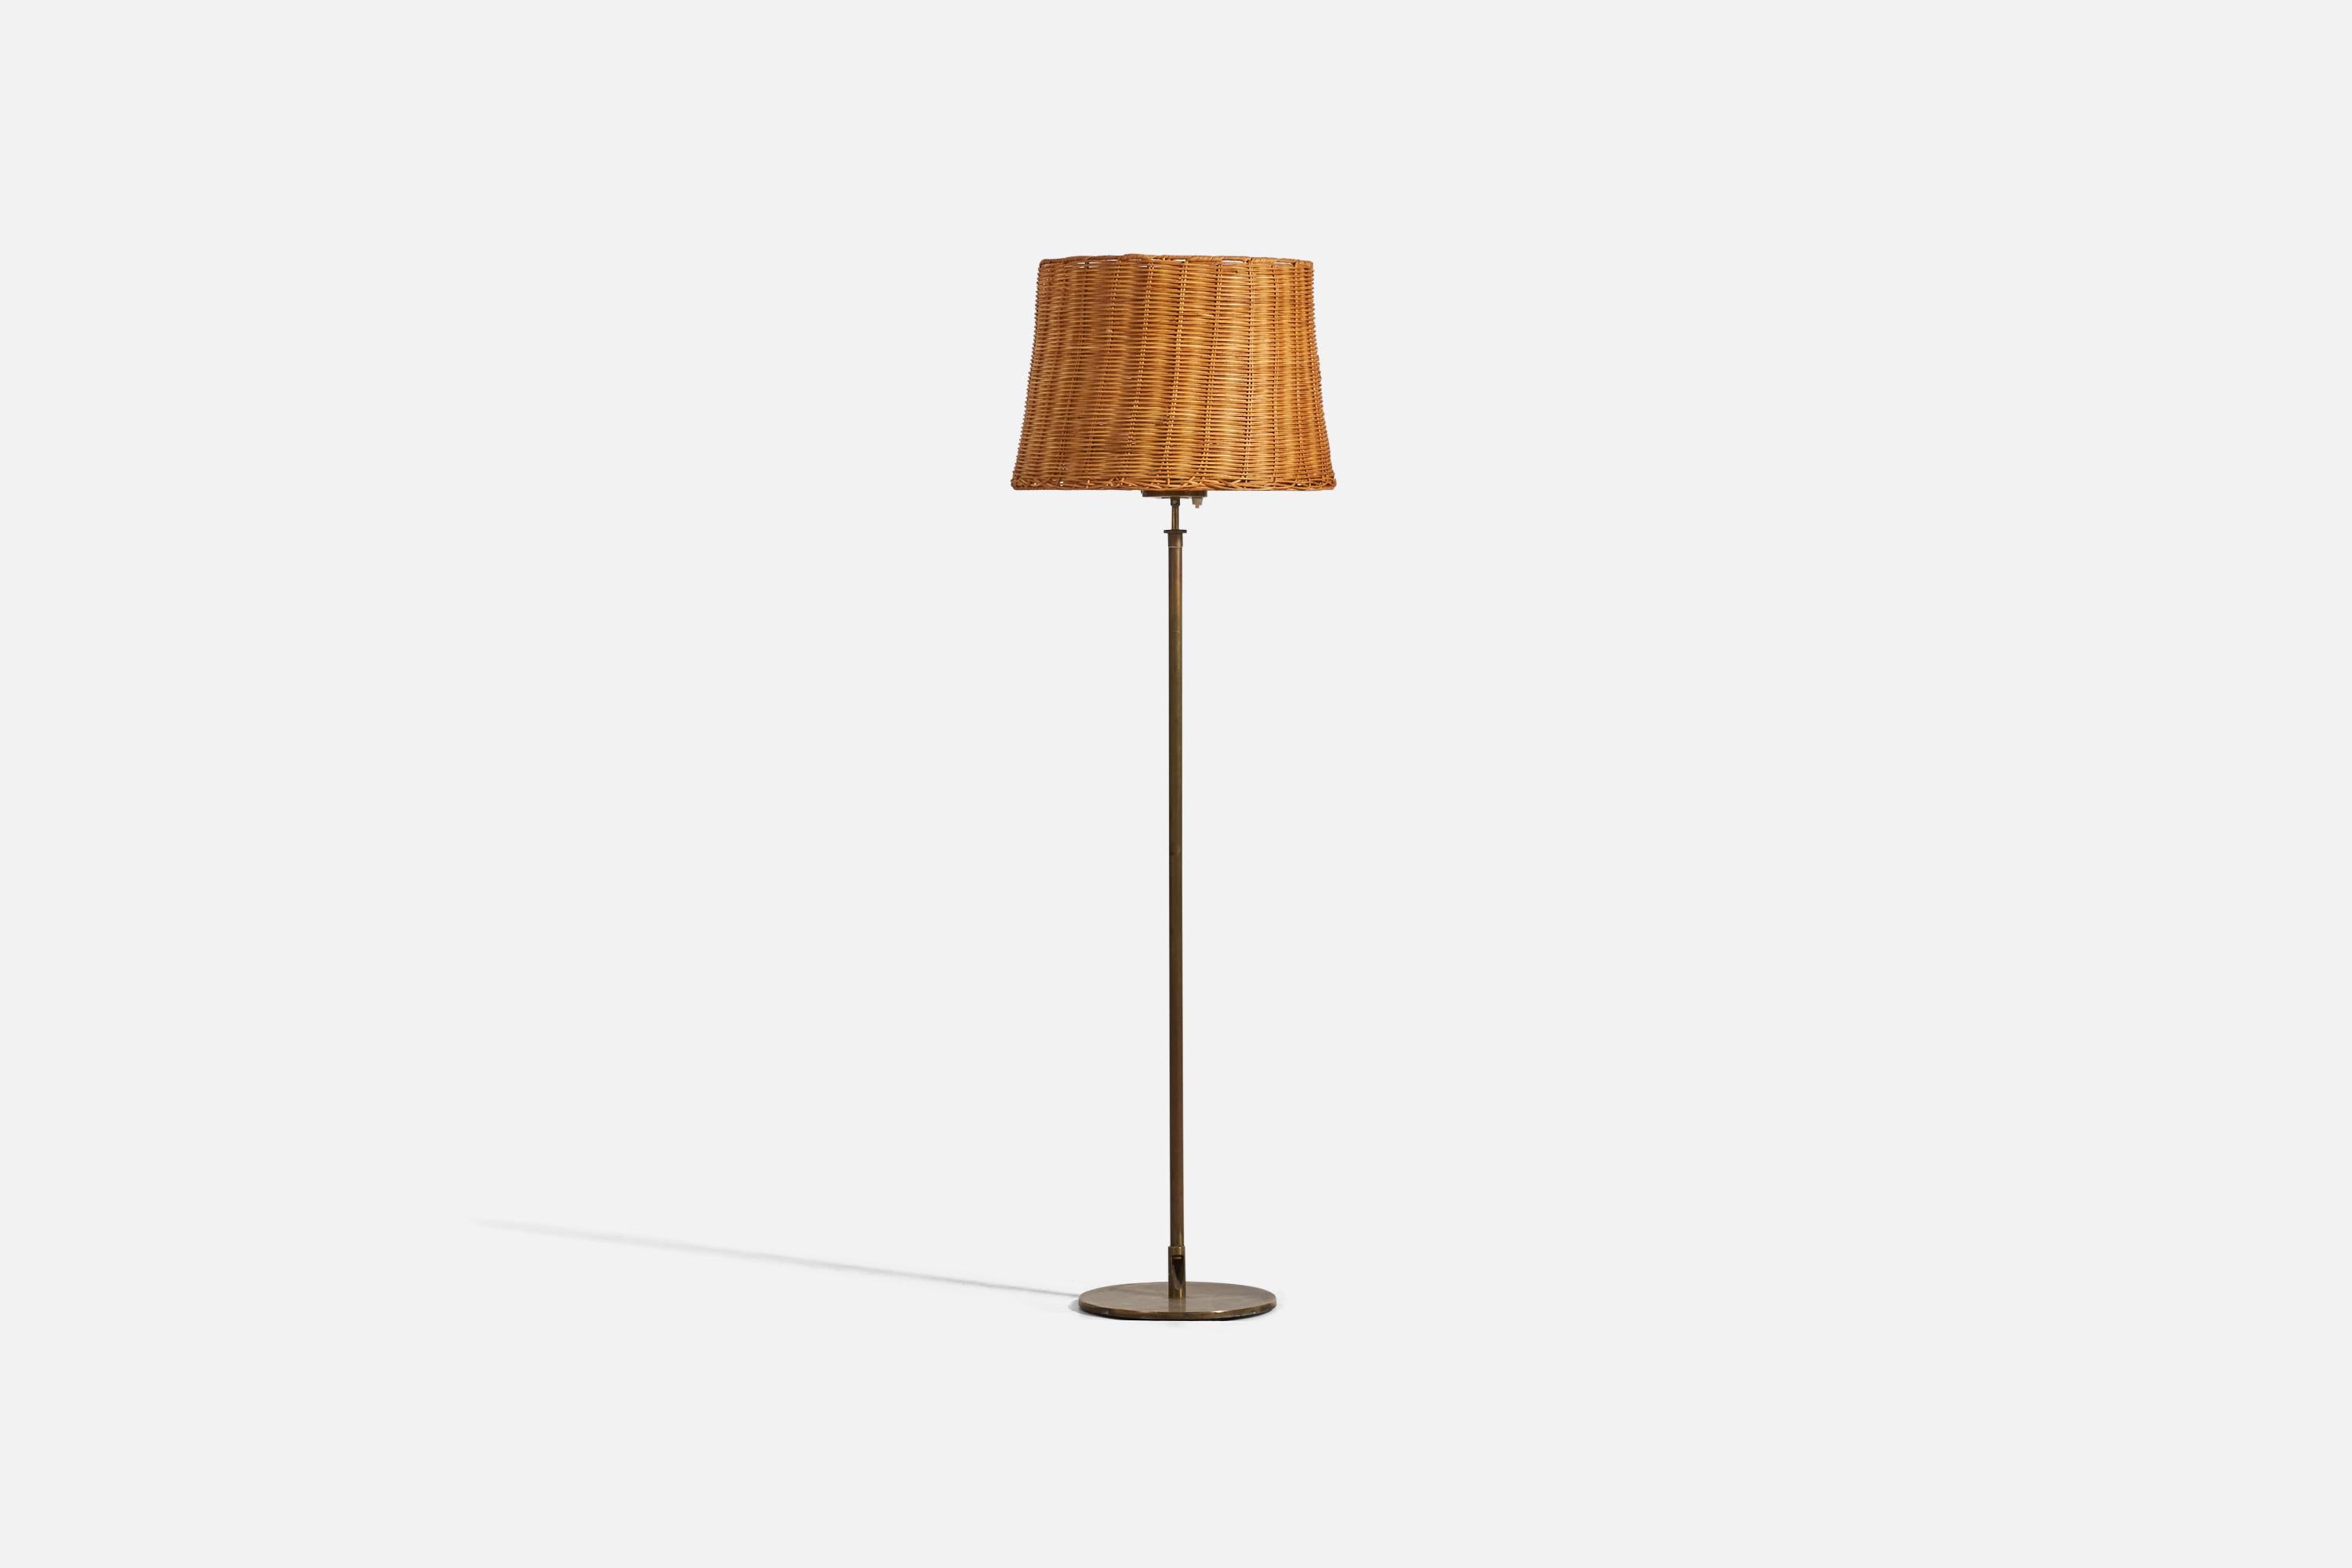 Eine Stehlampe aus Messing und Rattan, entworfen und hergestellt von einem H.W. Armatur, Schweden, 1950er Jahre. 

Abmessungen variabel, gemessen wie im ersten Bild dargestellt.

Verkauft mit Lampenschirm. Die angegebenen Maße gelten für die